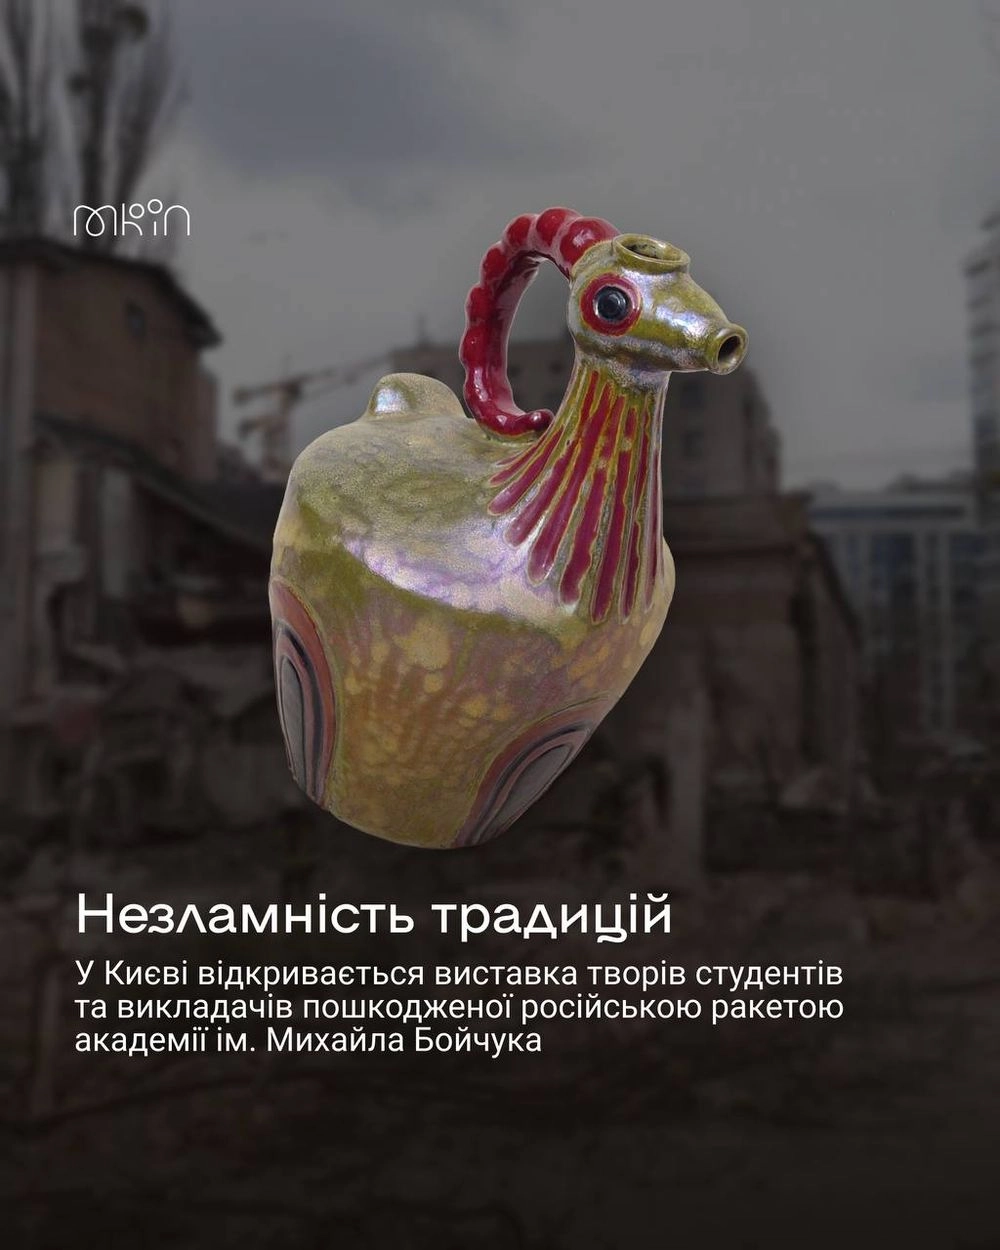 В Киеве открылась выставка "Несокрушимые традиции", на которой представлены произведения поврежденной российской ракетой Академии им